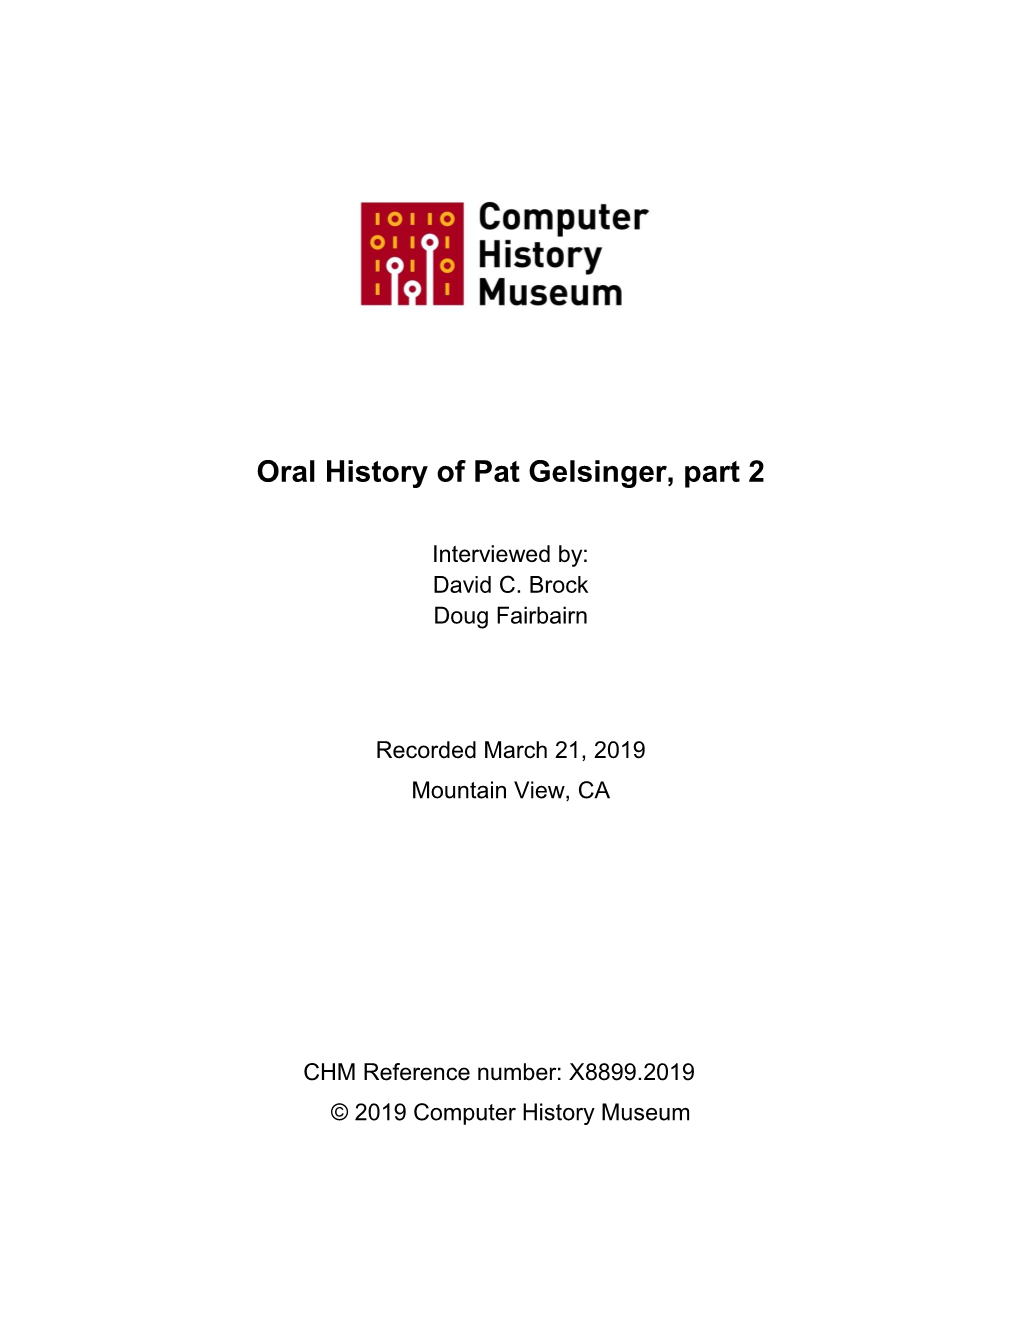 Oral History of Pat Gelsinger, Part 2